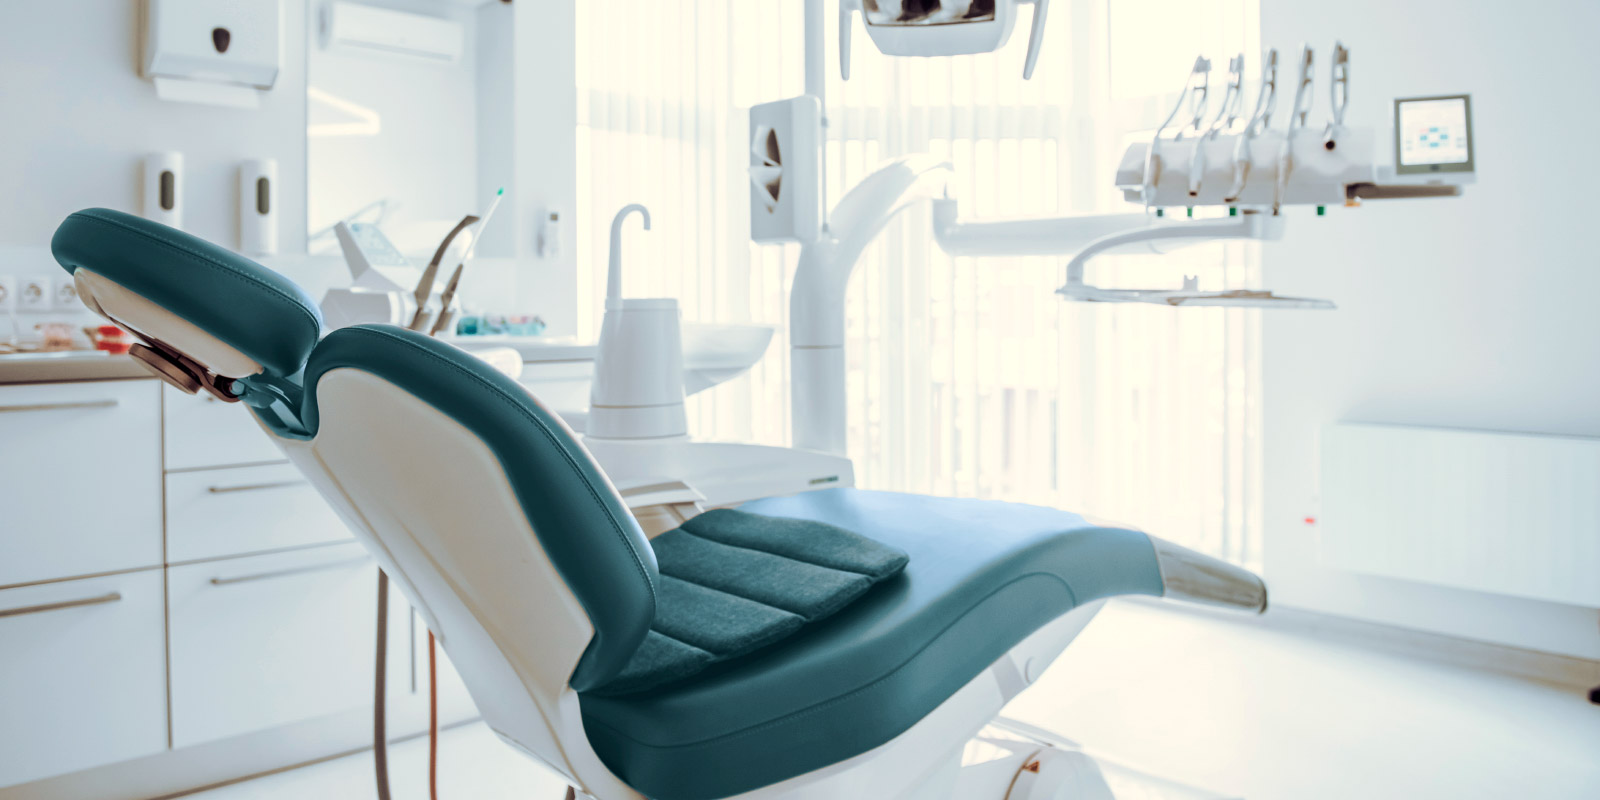 Conteúdo para dentistas: Planeje suas aquisições para 2022